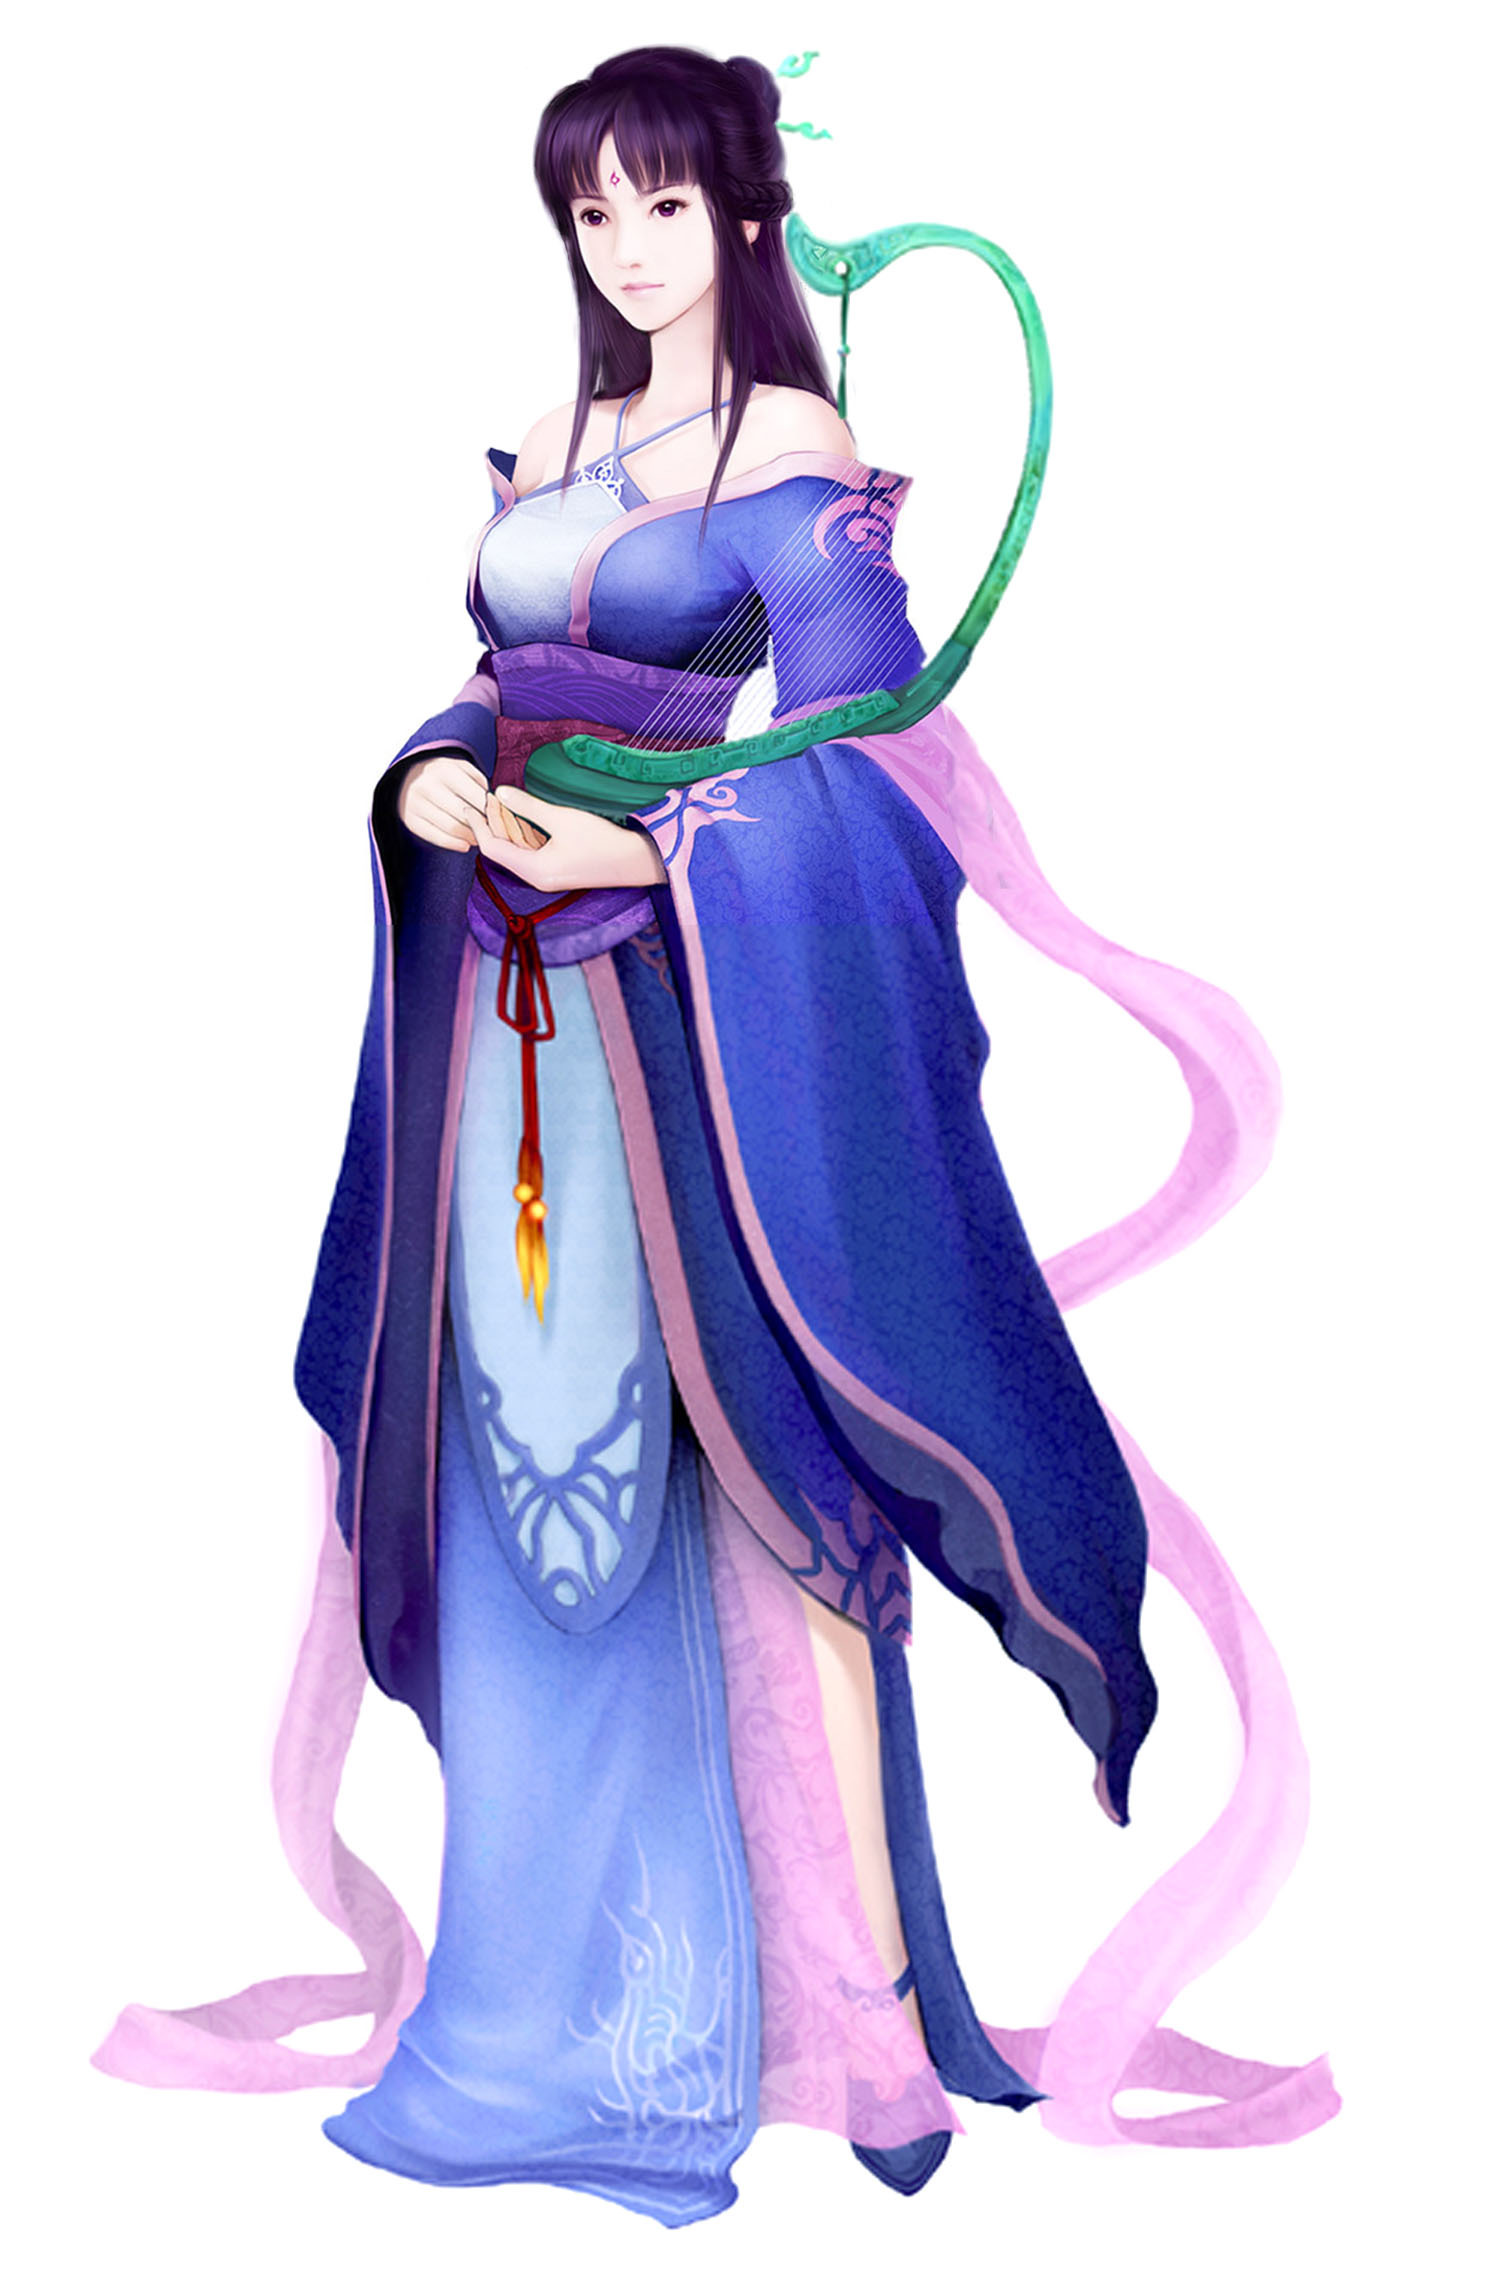 柳梦璃(游戏人物)柳梦璃,单机游戏《仙剑奇侠传四》的第二女主角